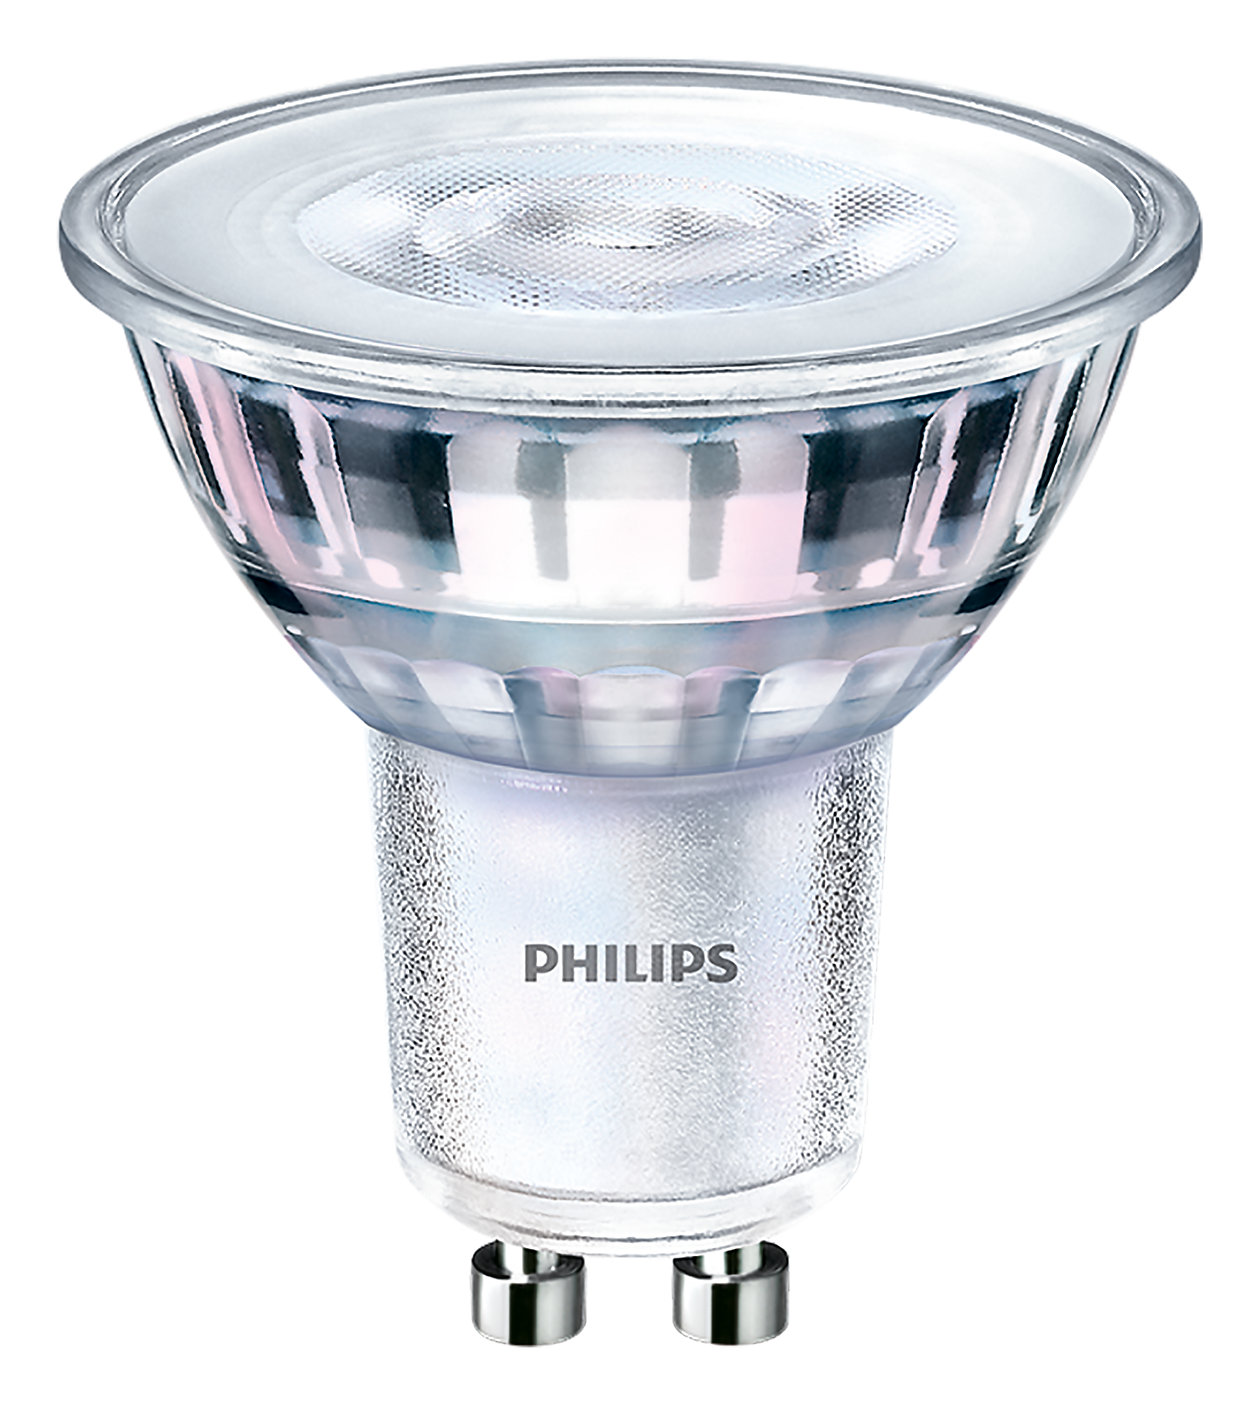 Pentru lucrările dumneavoastră de iluminat de zi cu zi, CorePro LEDspot MV este perfectă pentru iluminarea de tip spot GU10 și oferă o lumină caldă asemănătoare cu halogenul